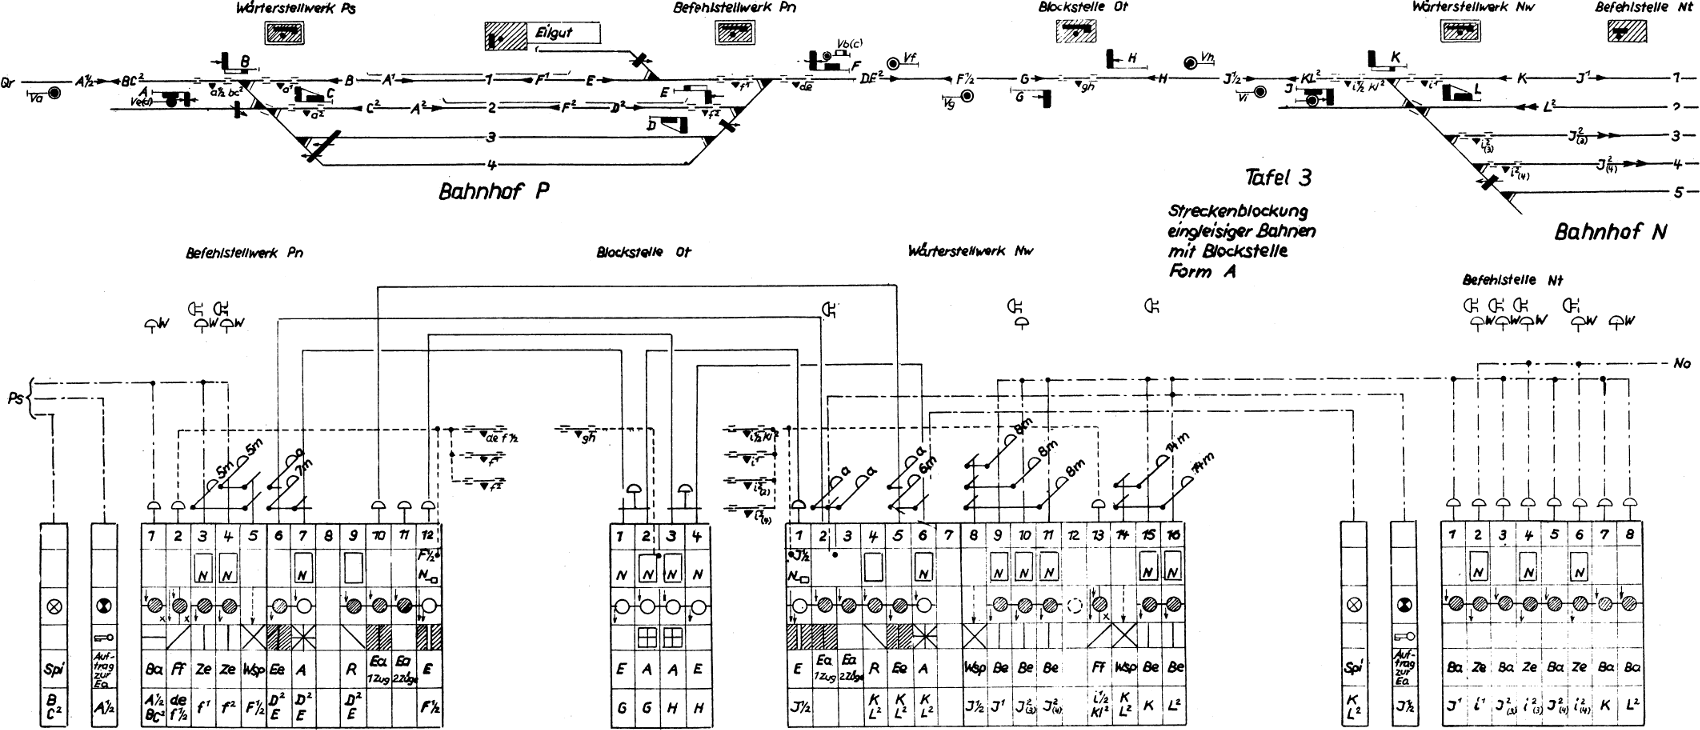 oben schematischer Gleisplan, darunter tabellarische Darstellung der Bestückung des Blockwerks